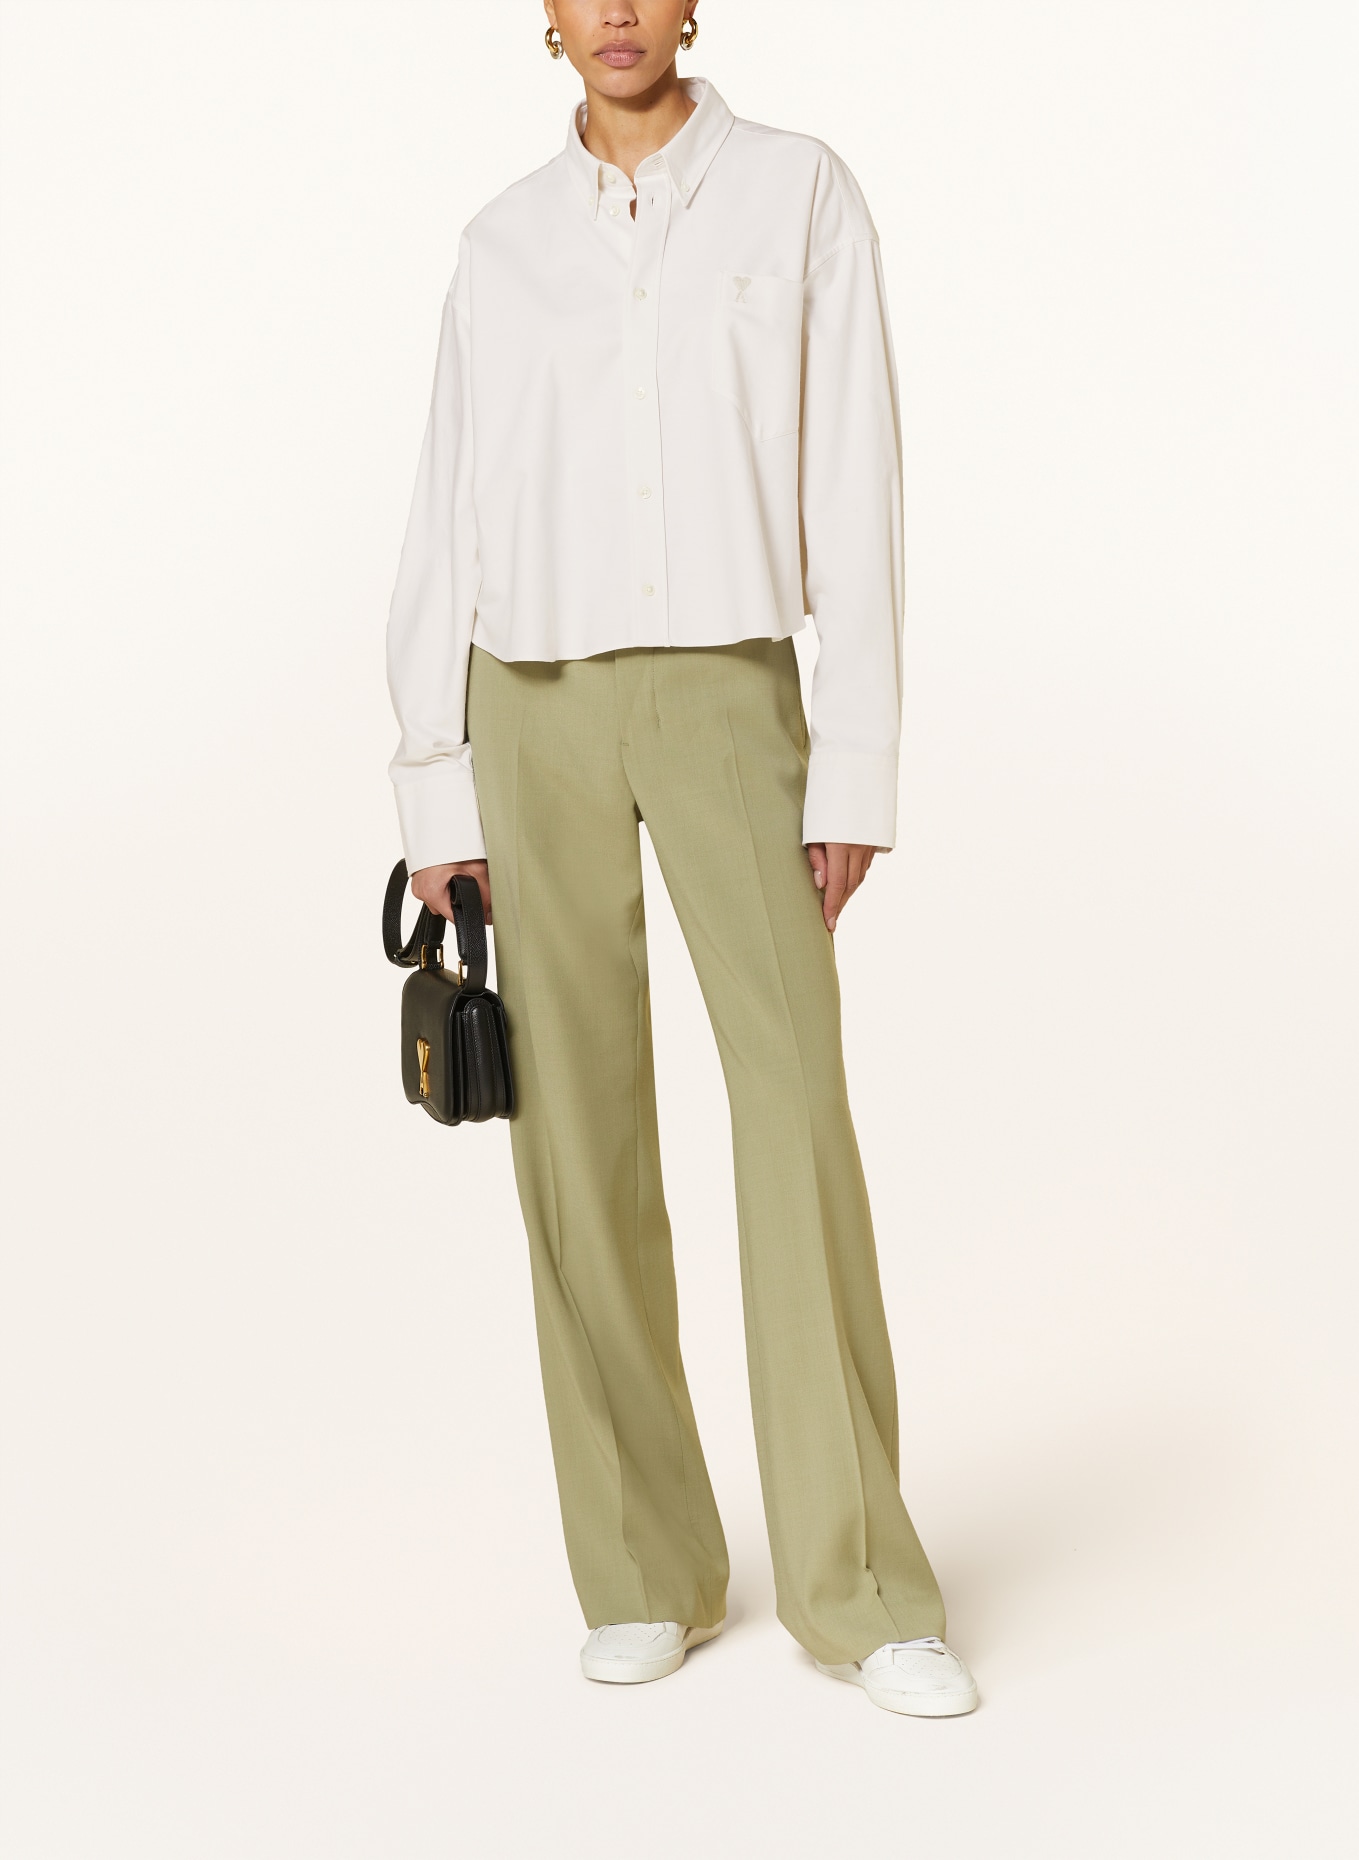 AMI PARIS Cropped shirt blouse, Color: ECRU (Image 2)